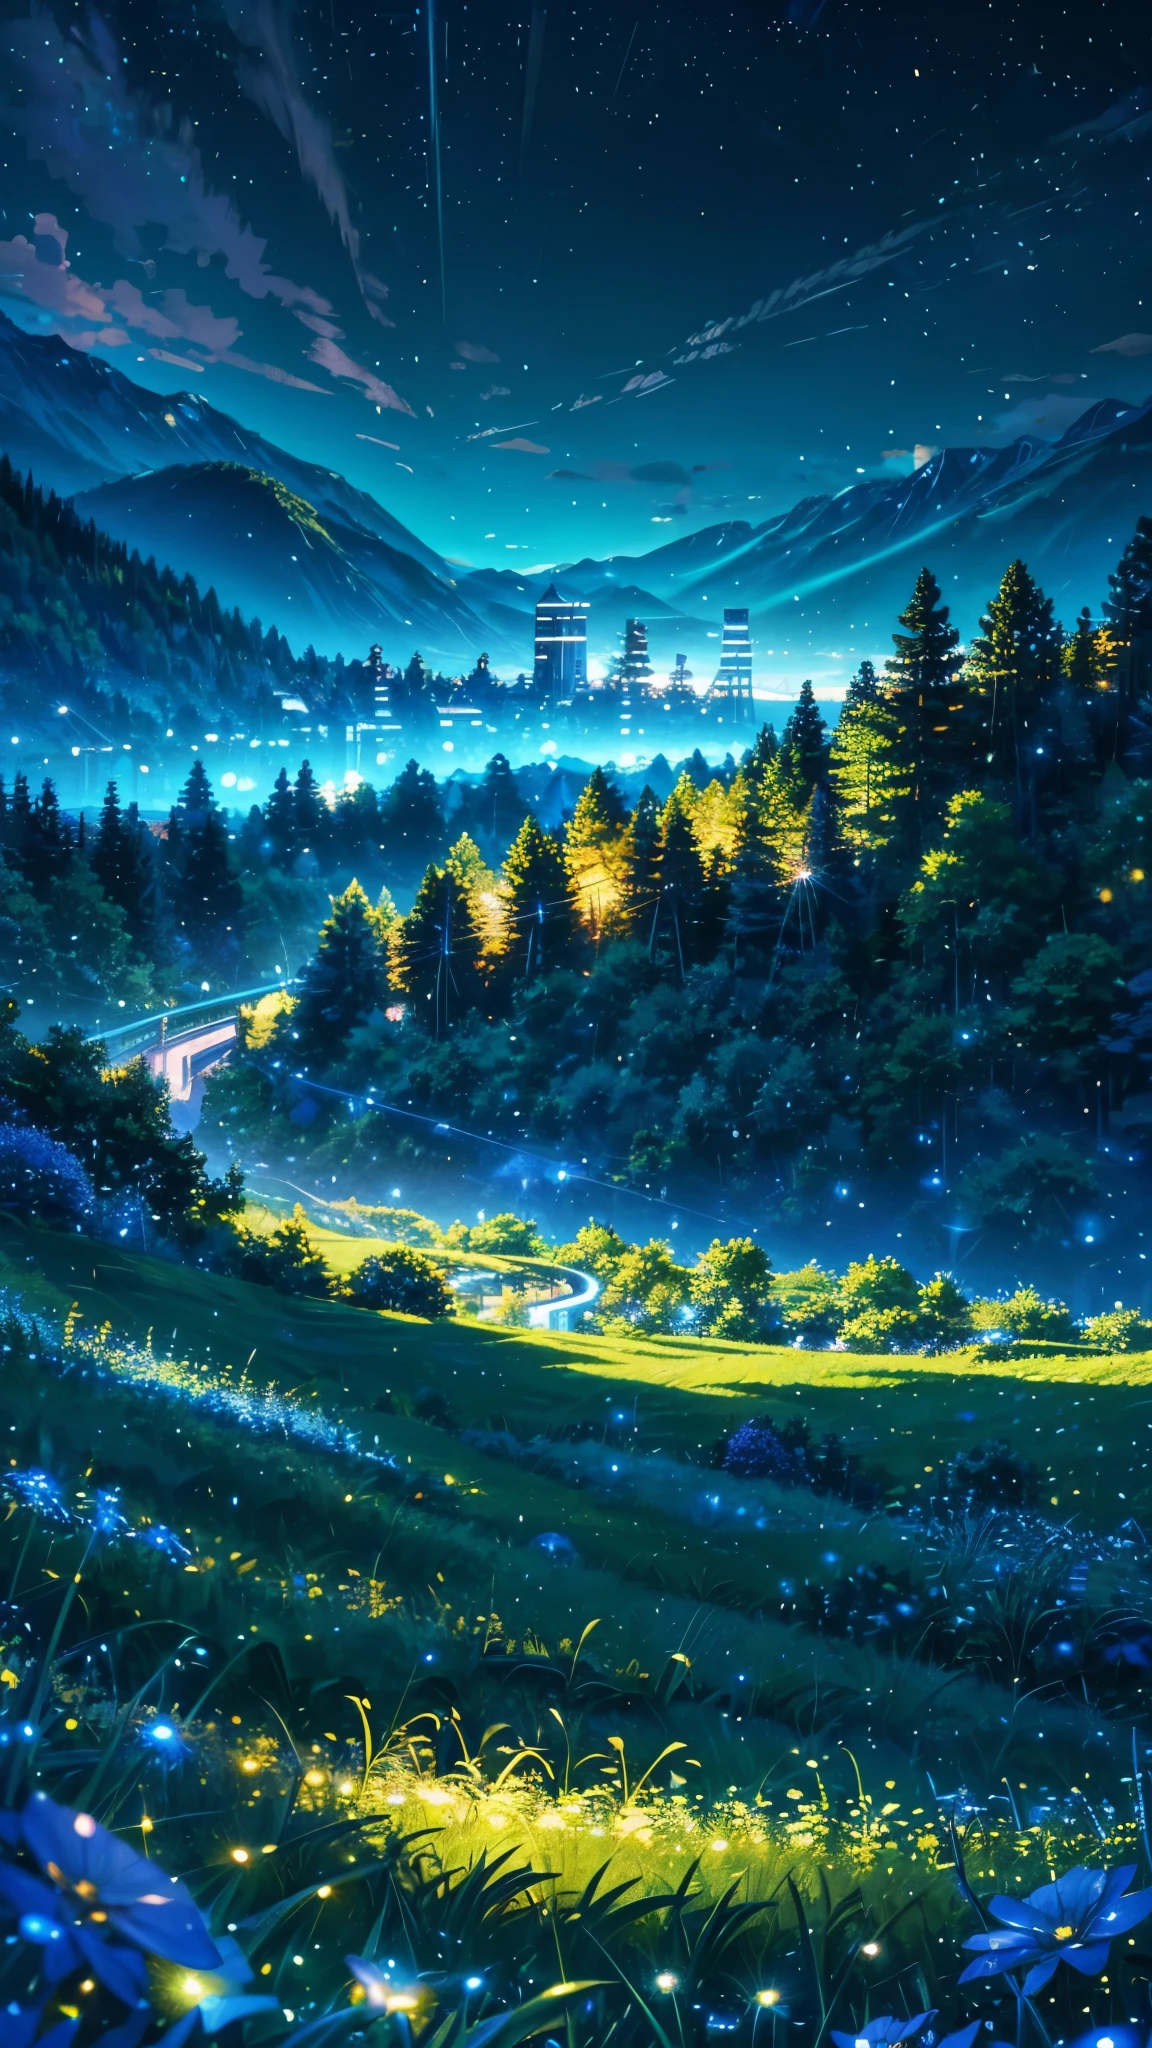 مناظر طبيعية مستوحاة من الرسوم المتحركة لجبال الألب مع زجاج أزرق ساطع مثل السماء المتلألئة المتلألئة(تأثير خوخه) (اليراعات)